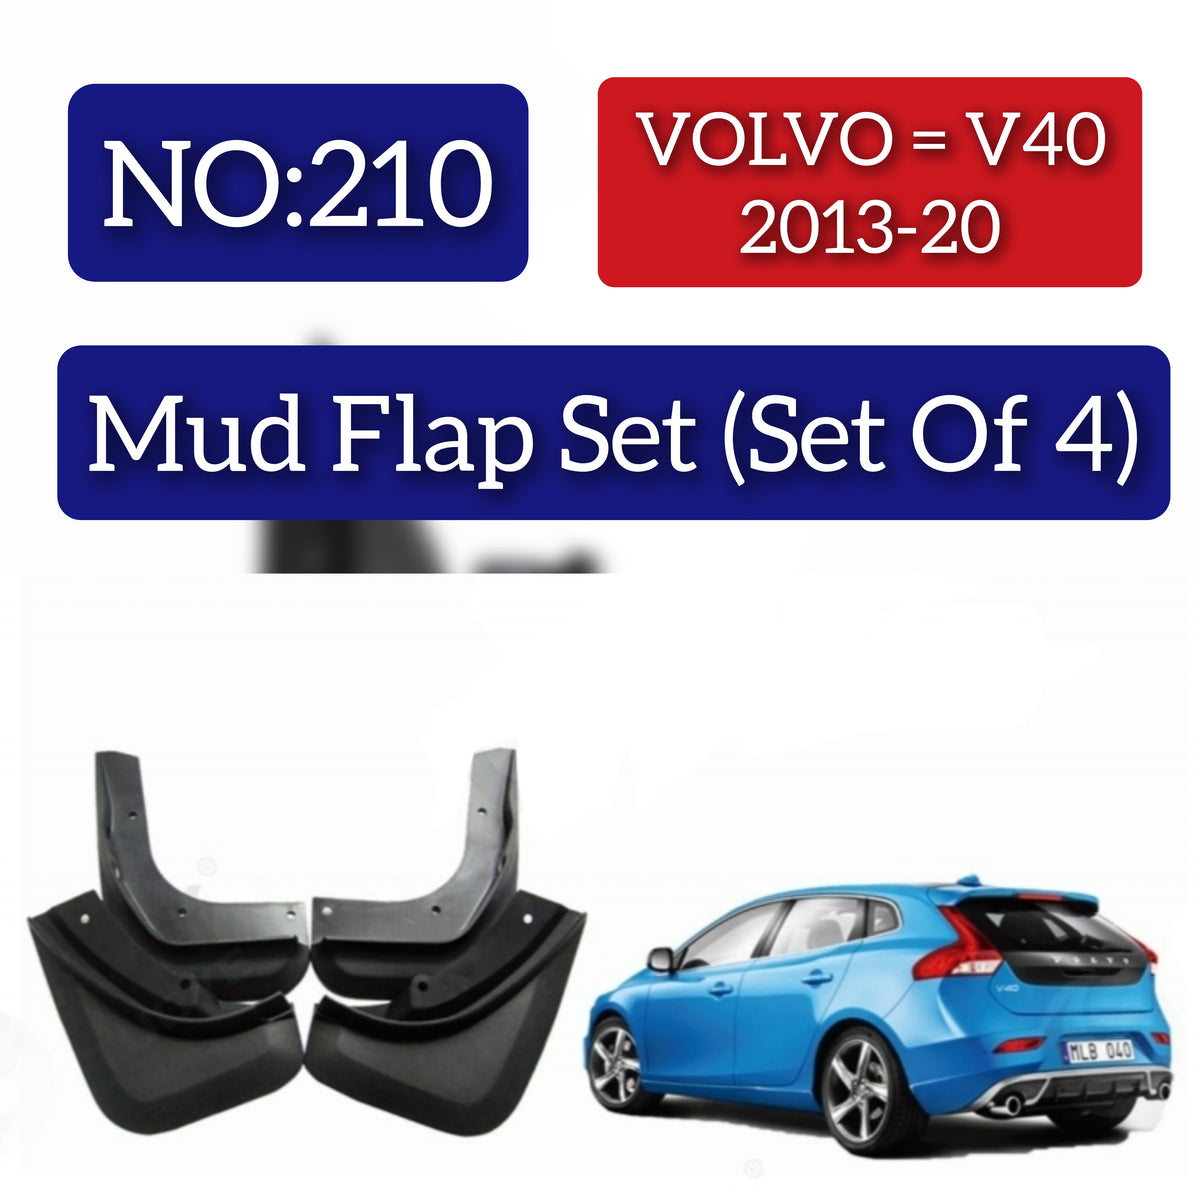 Volvo V40 2013-20 Mud Flap Set (Set of 4) Tag 210